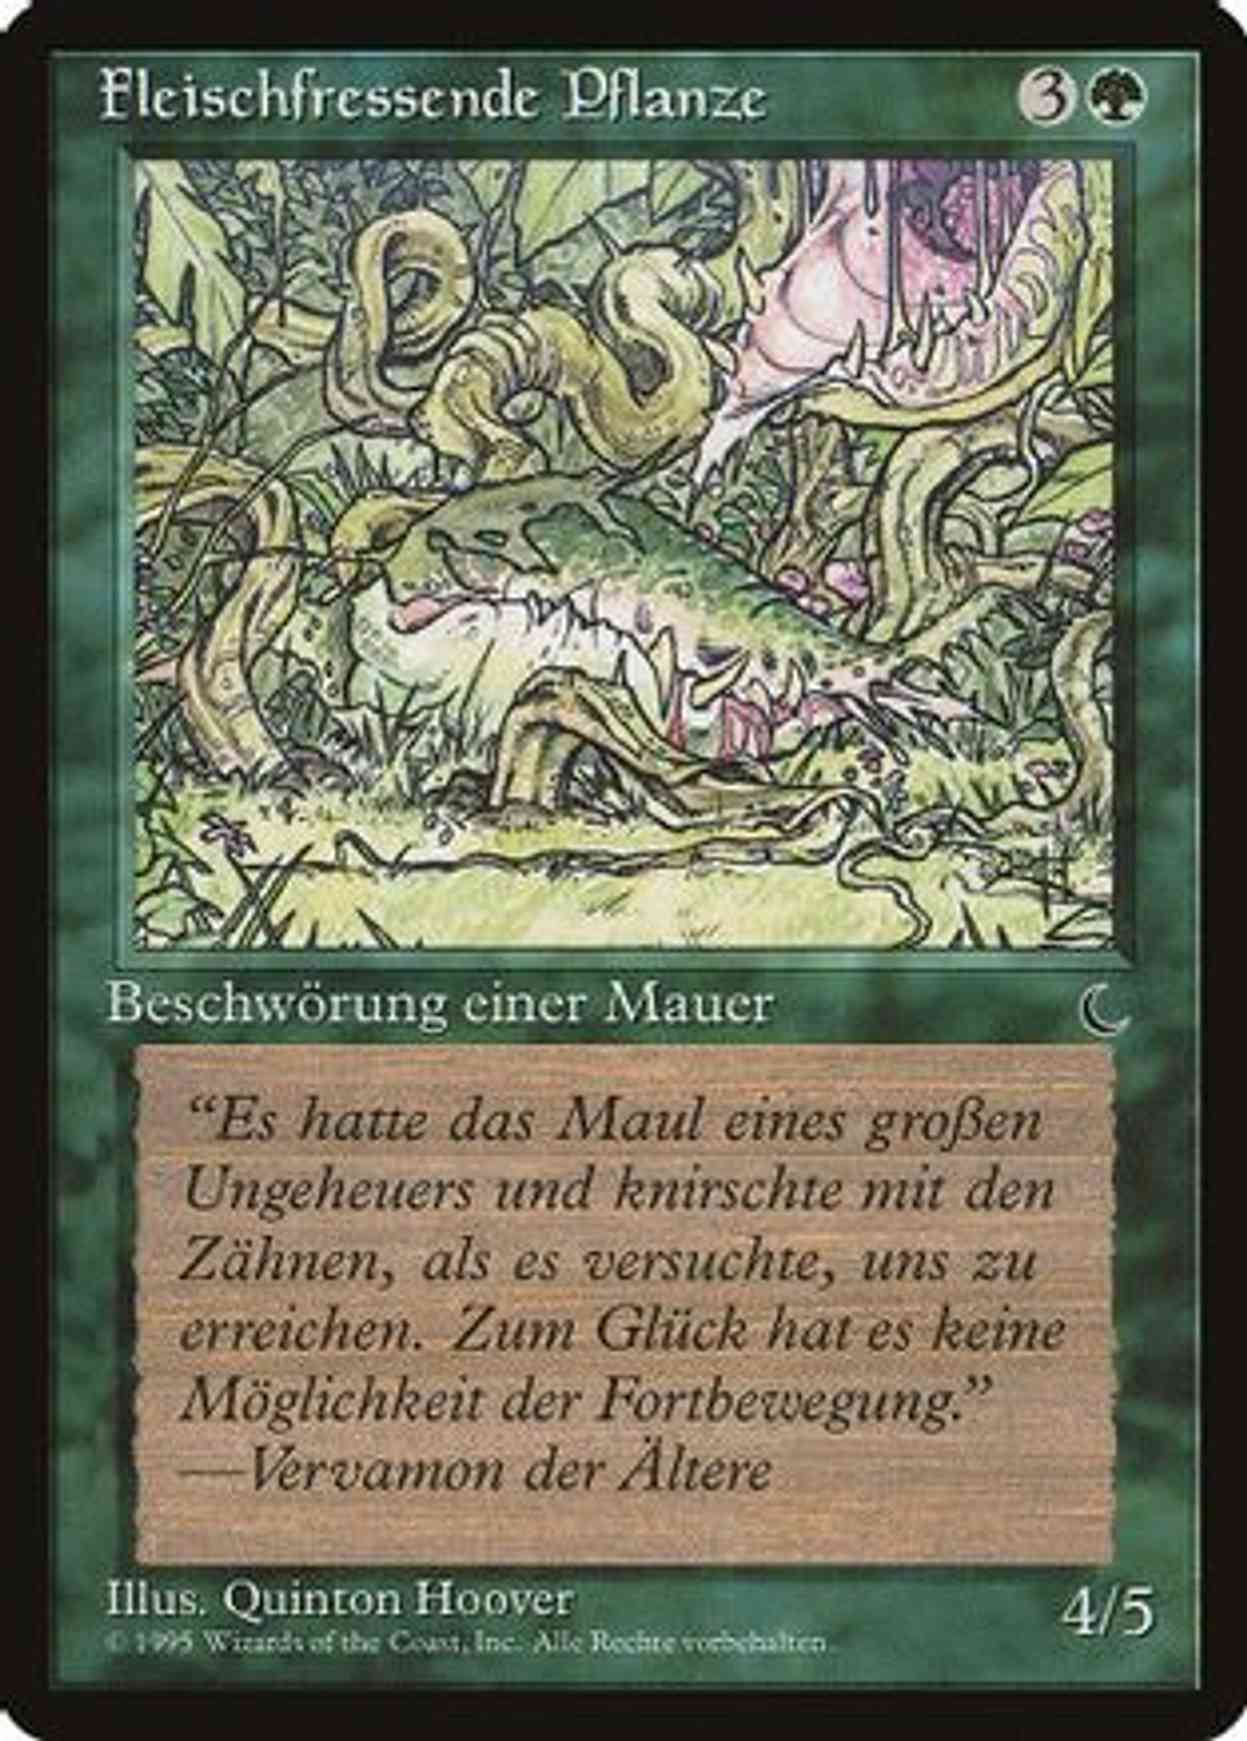 Carnivorous Plant (German) - "Fleischfressende Pflanze" magic card front